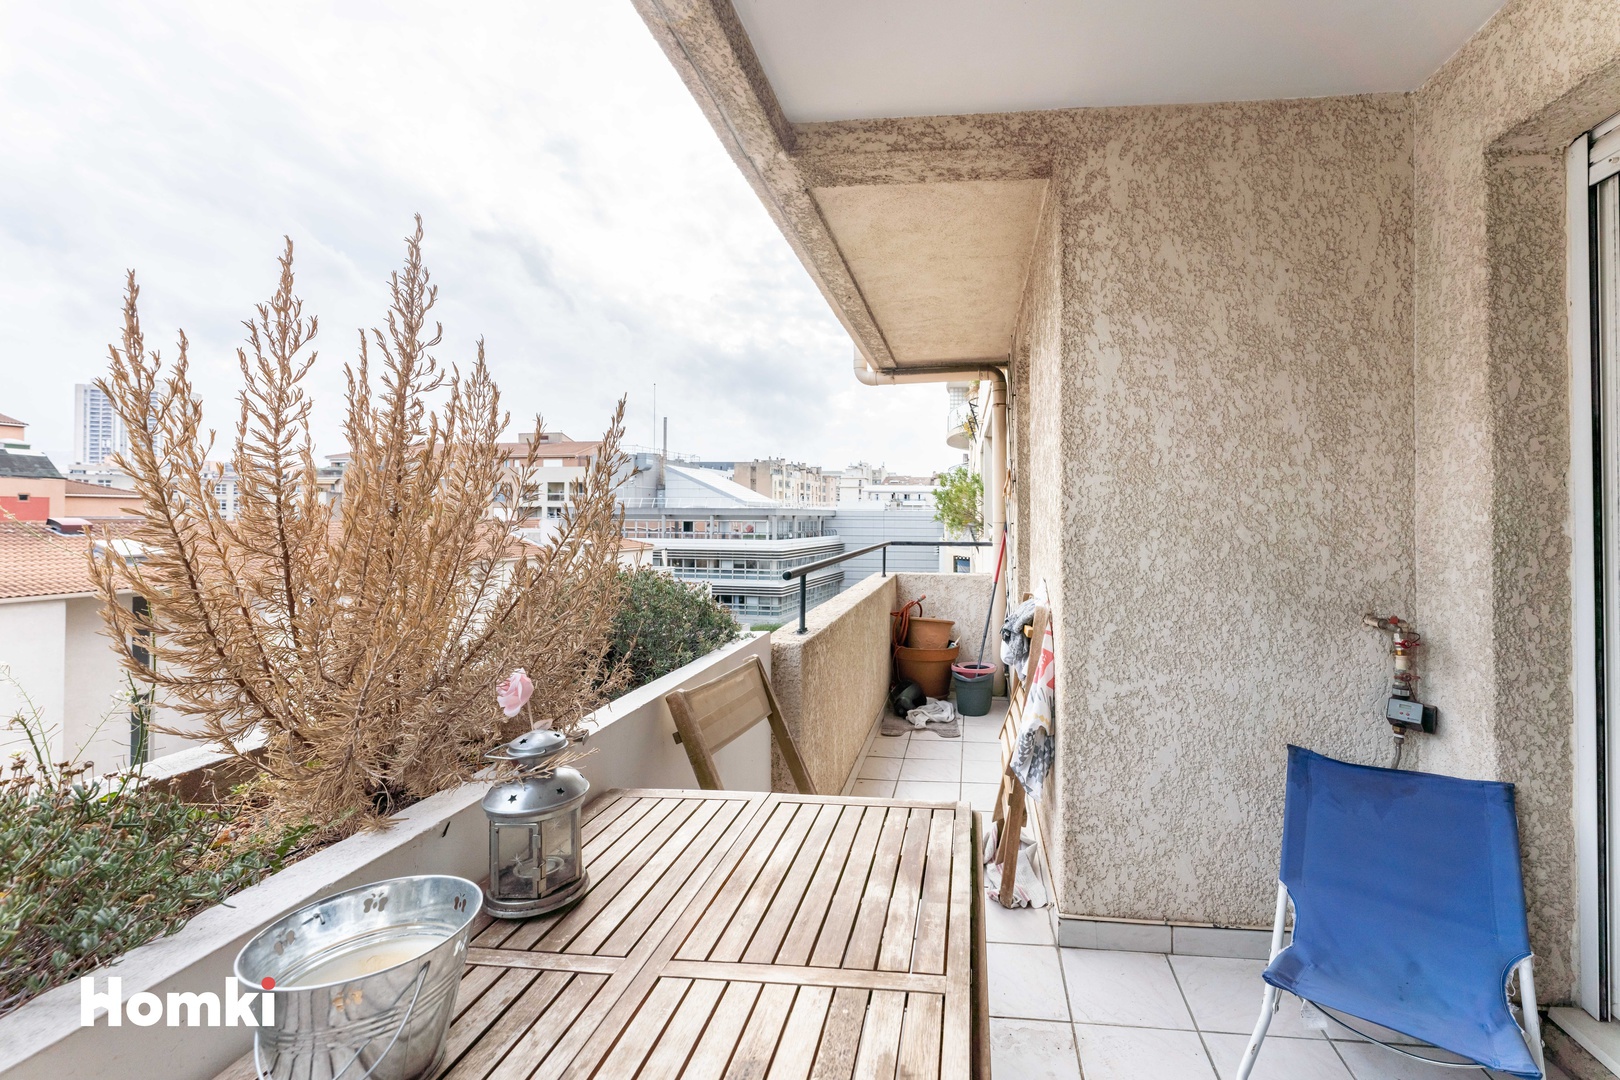 Homki - Vente Appartement  de 35.0 m² à Marseille 13008